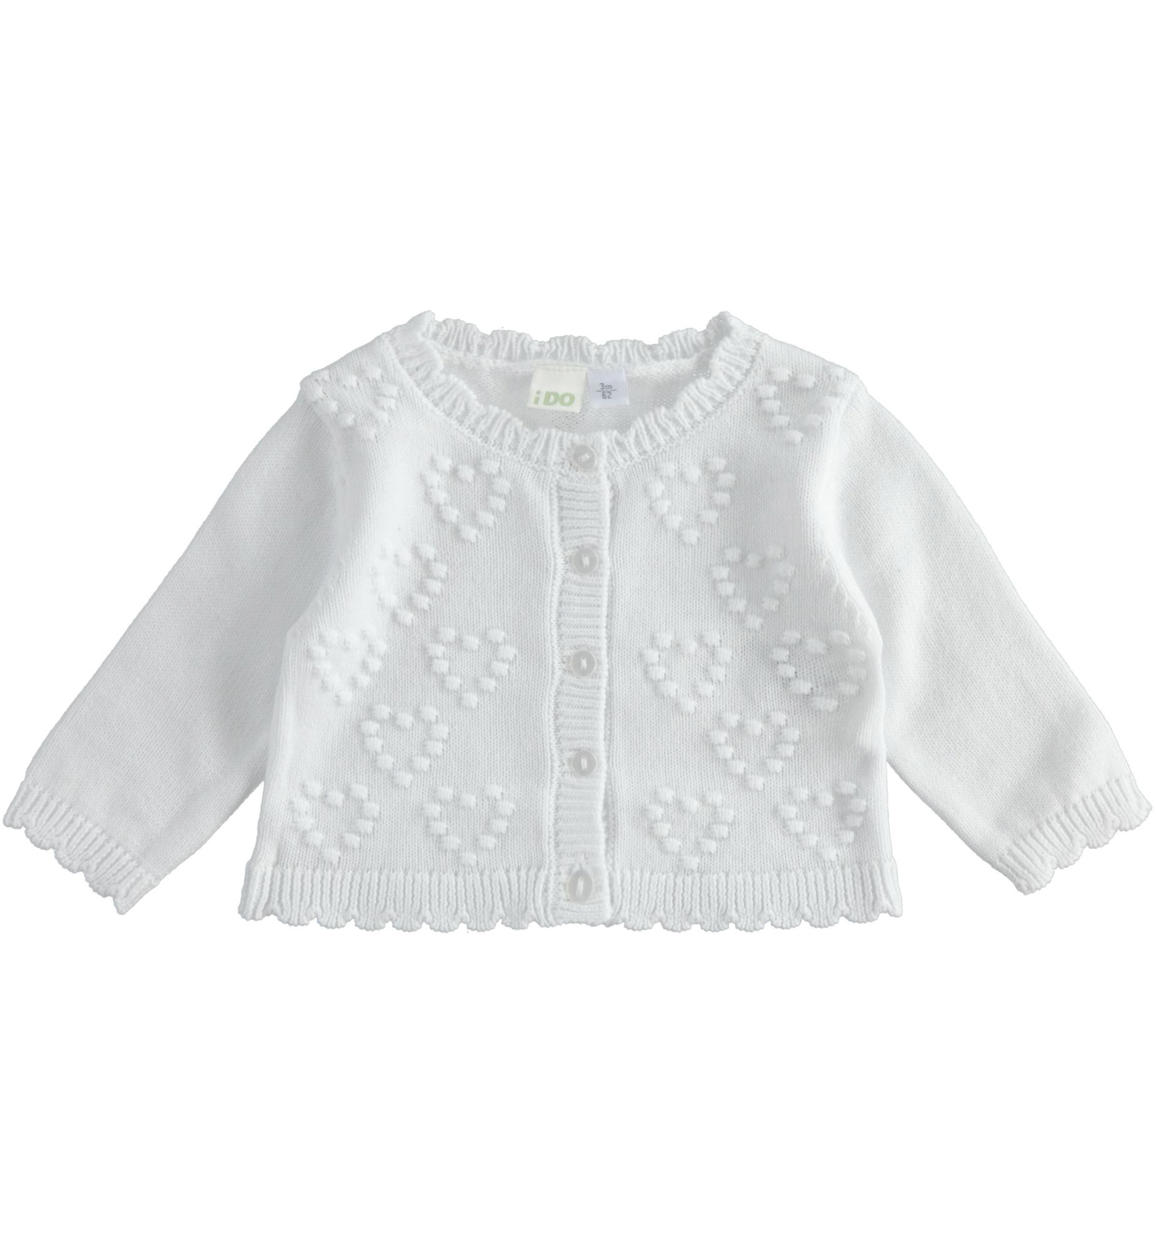 Cardigan neonata con cuori in tricot 100% cotone BIANCO iDO